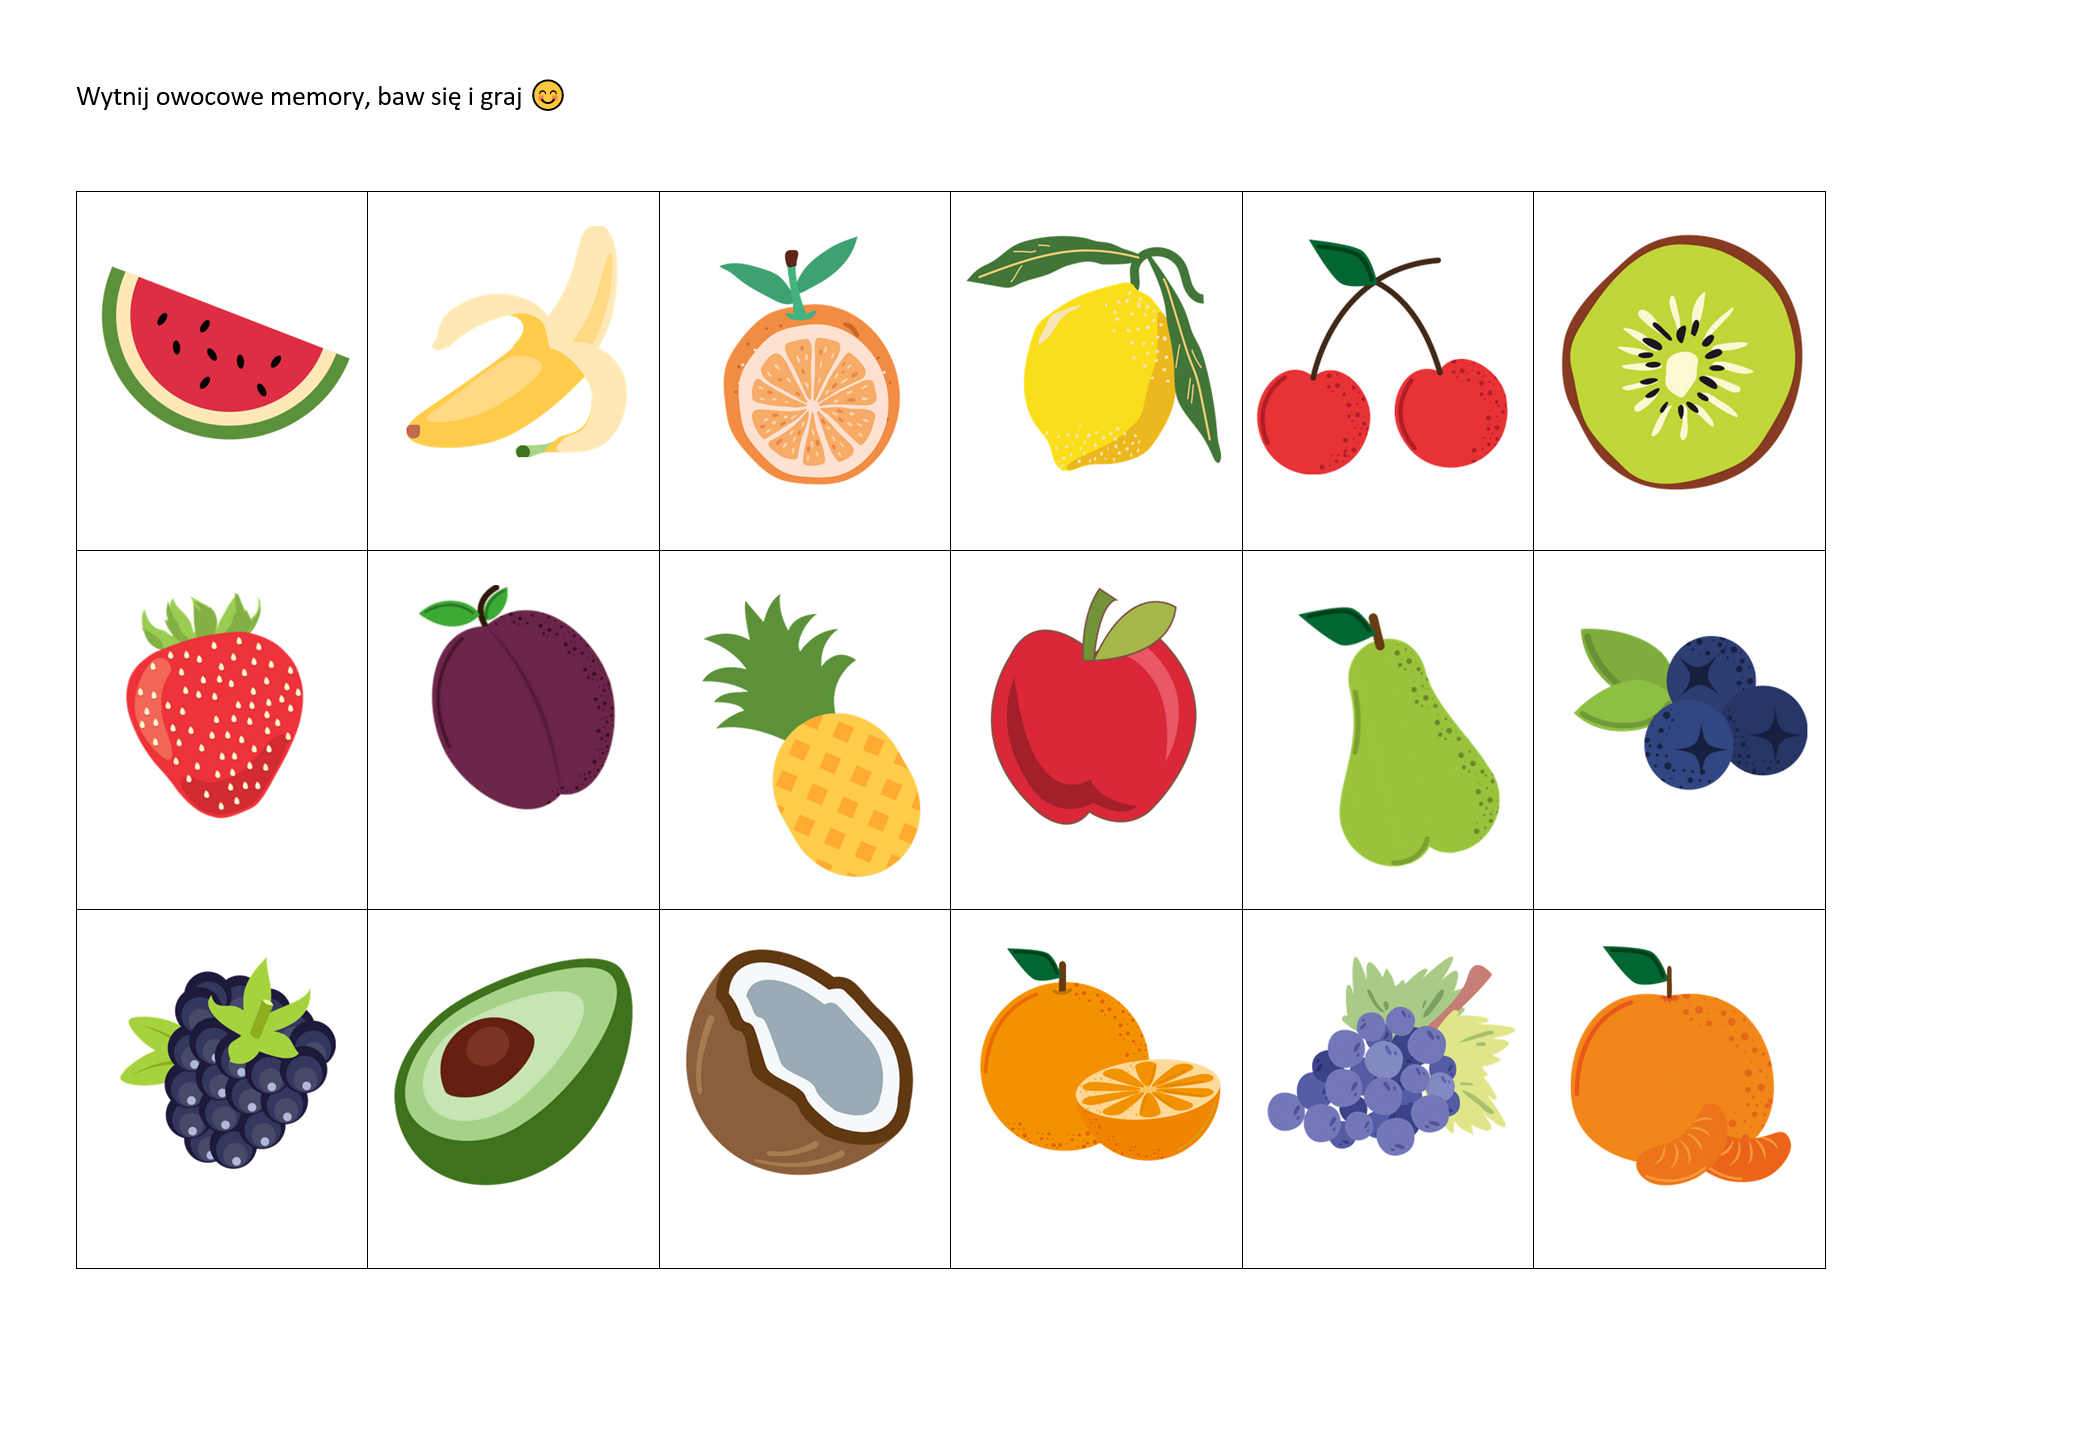 owocowe memory do druku, memo pdf, owoce do druku, kreatywny skarbiec, owocowe zabawy